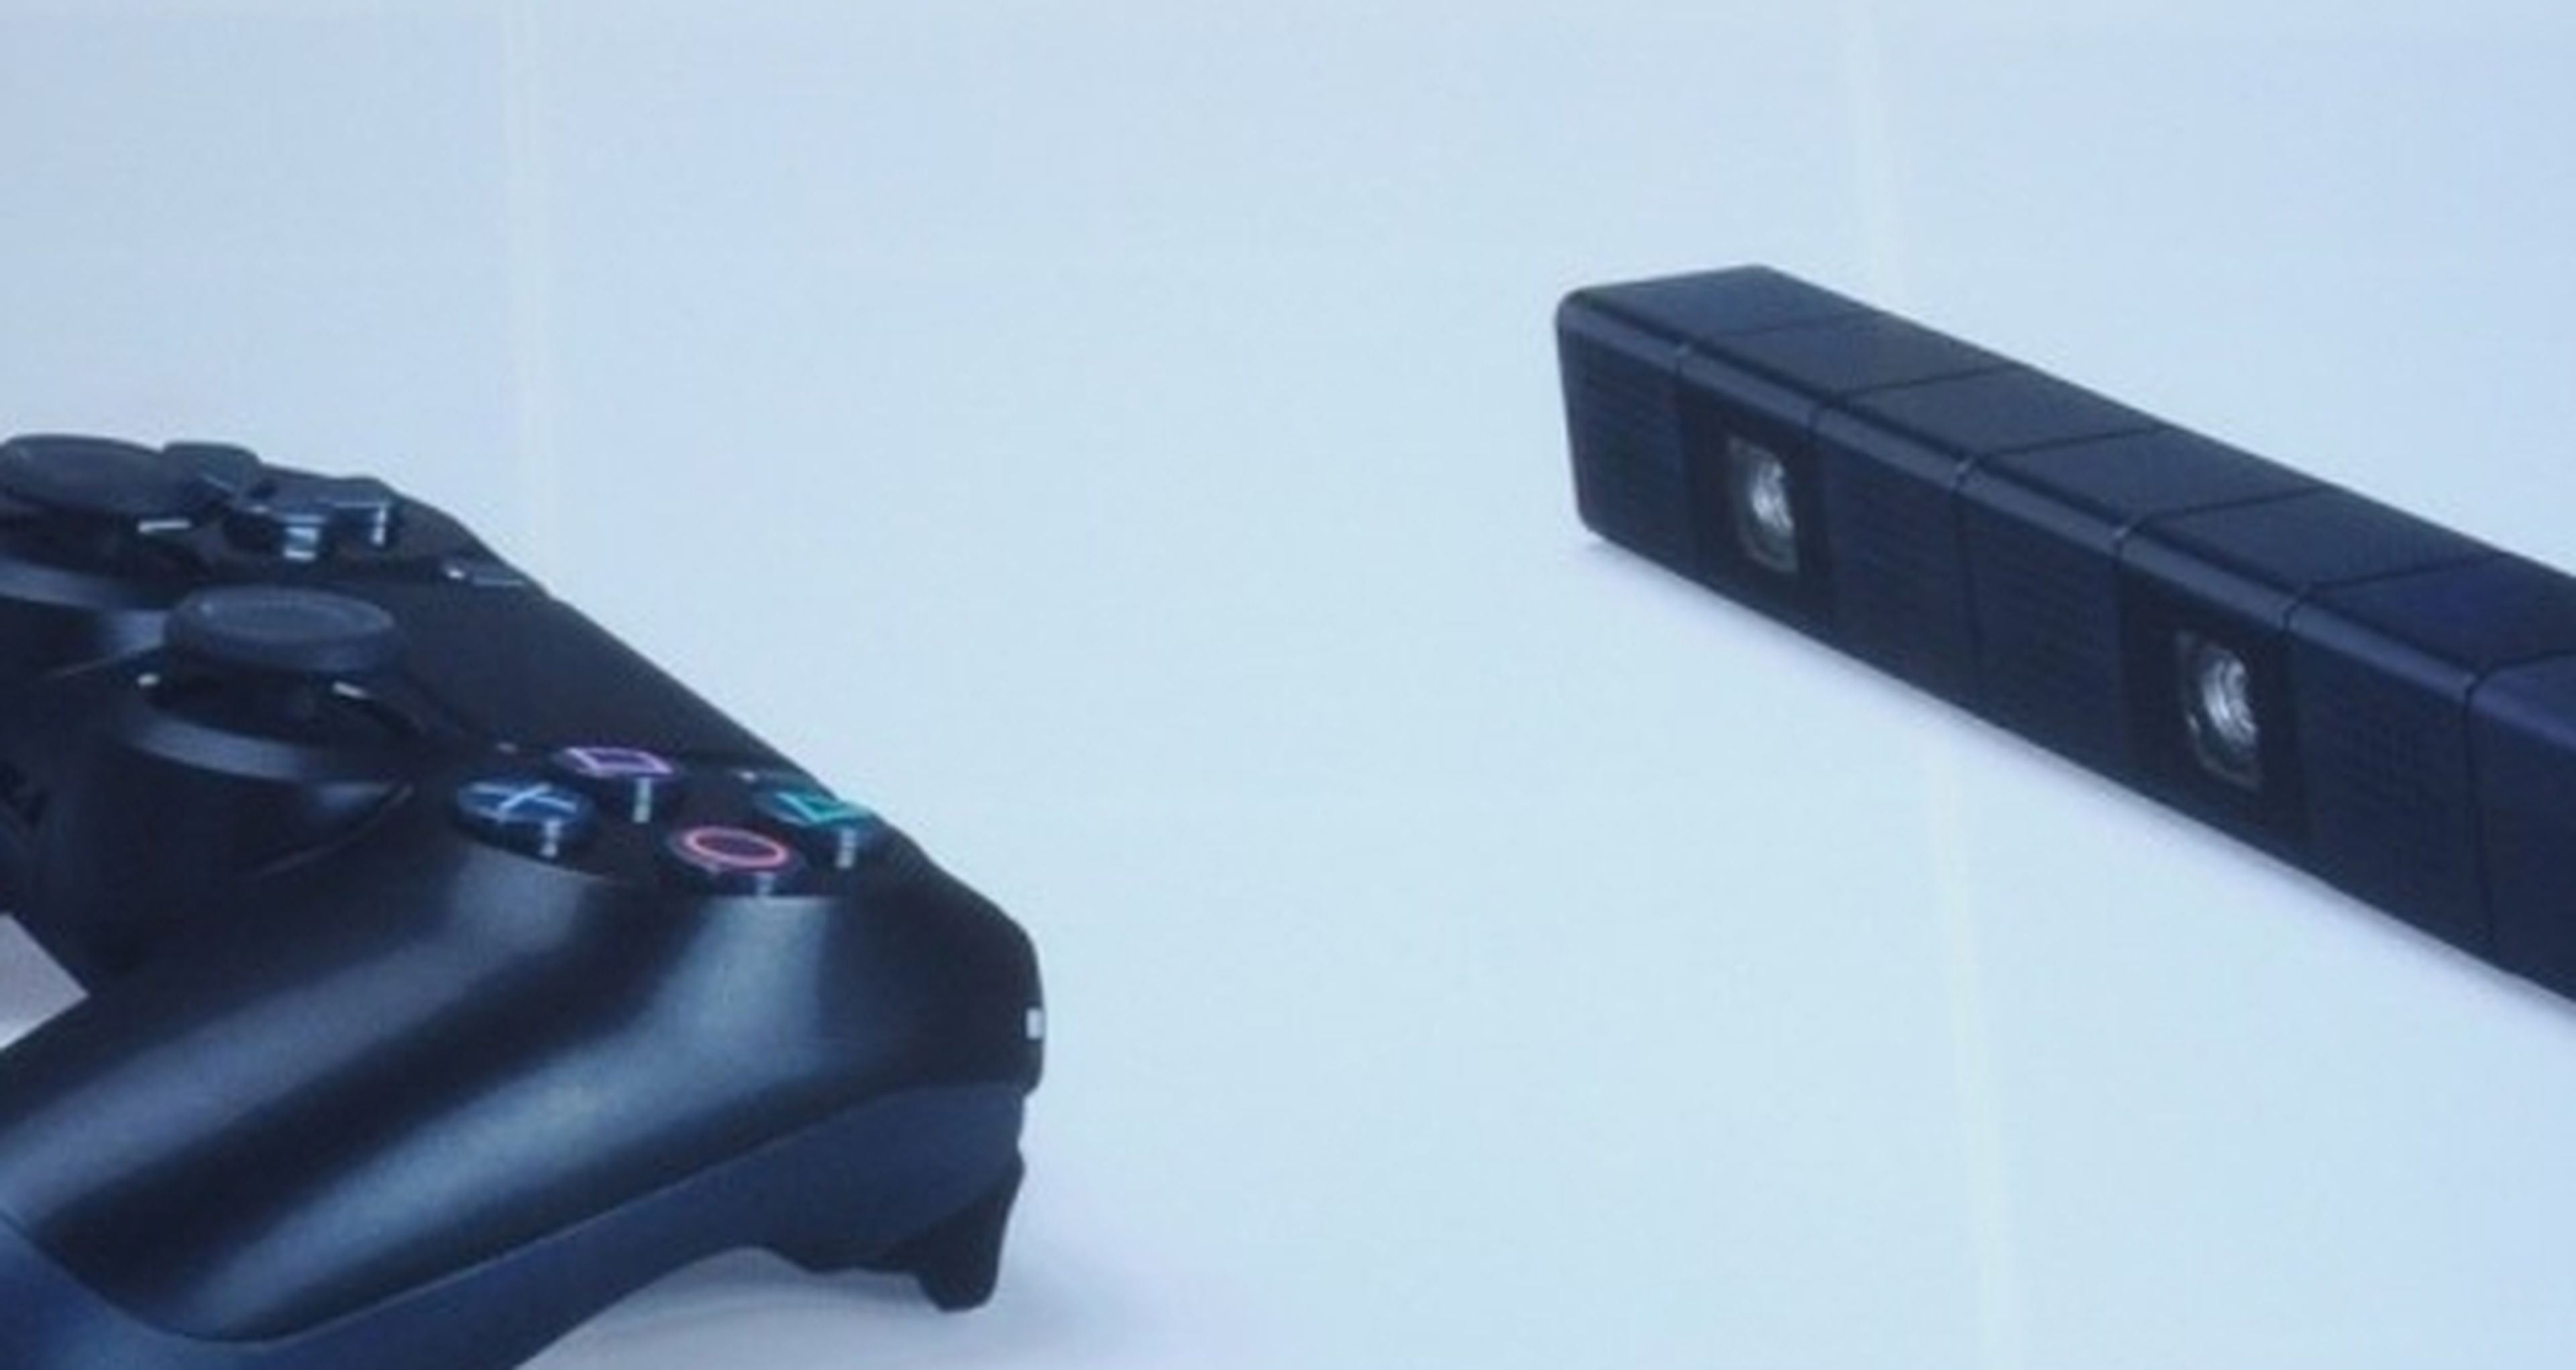 PS4 nos muestra el DualShock 4